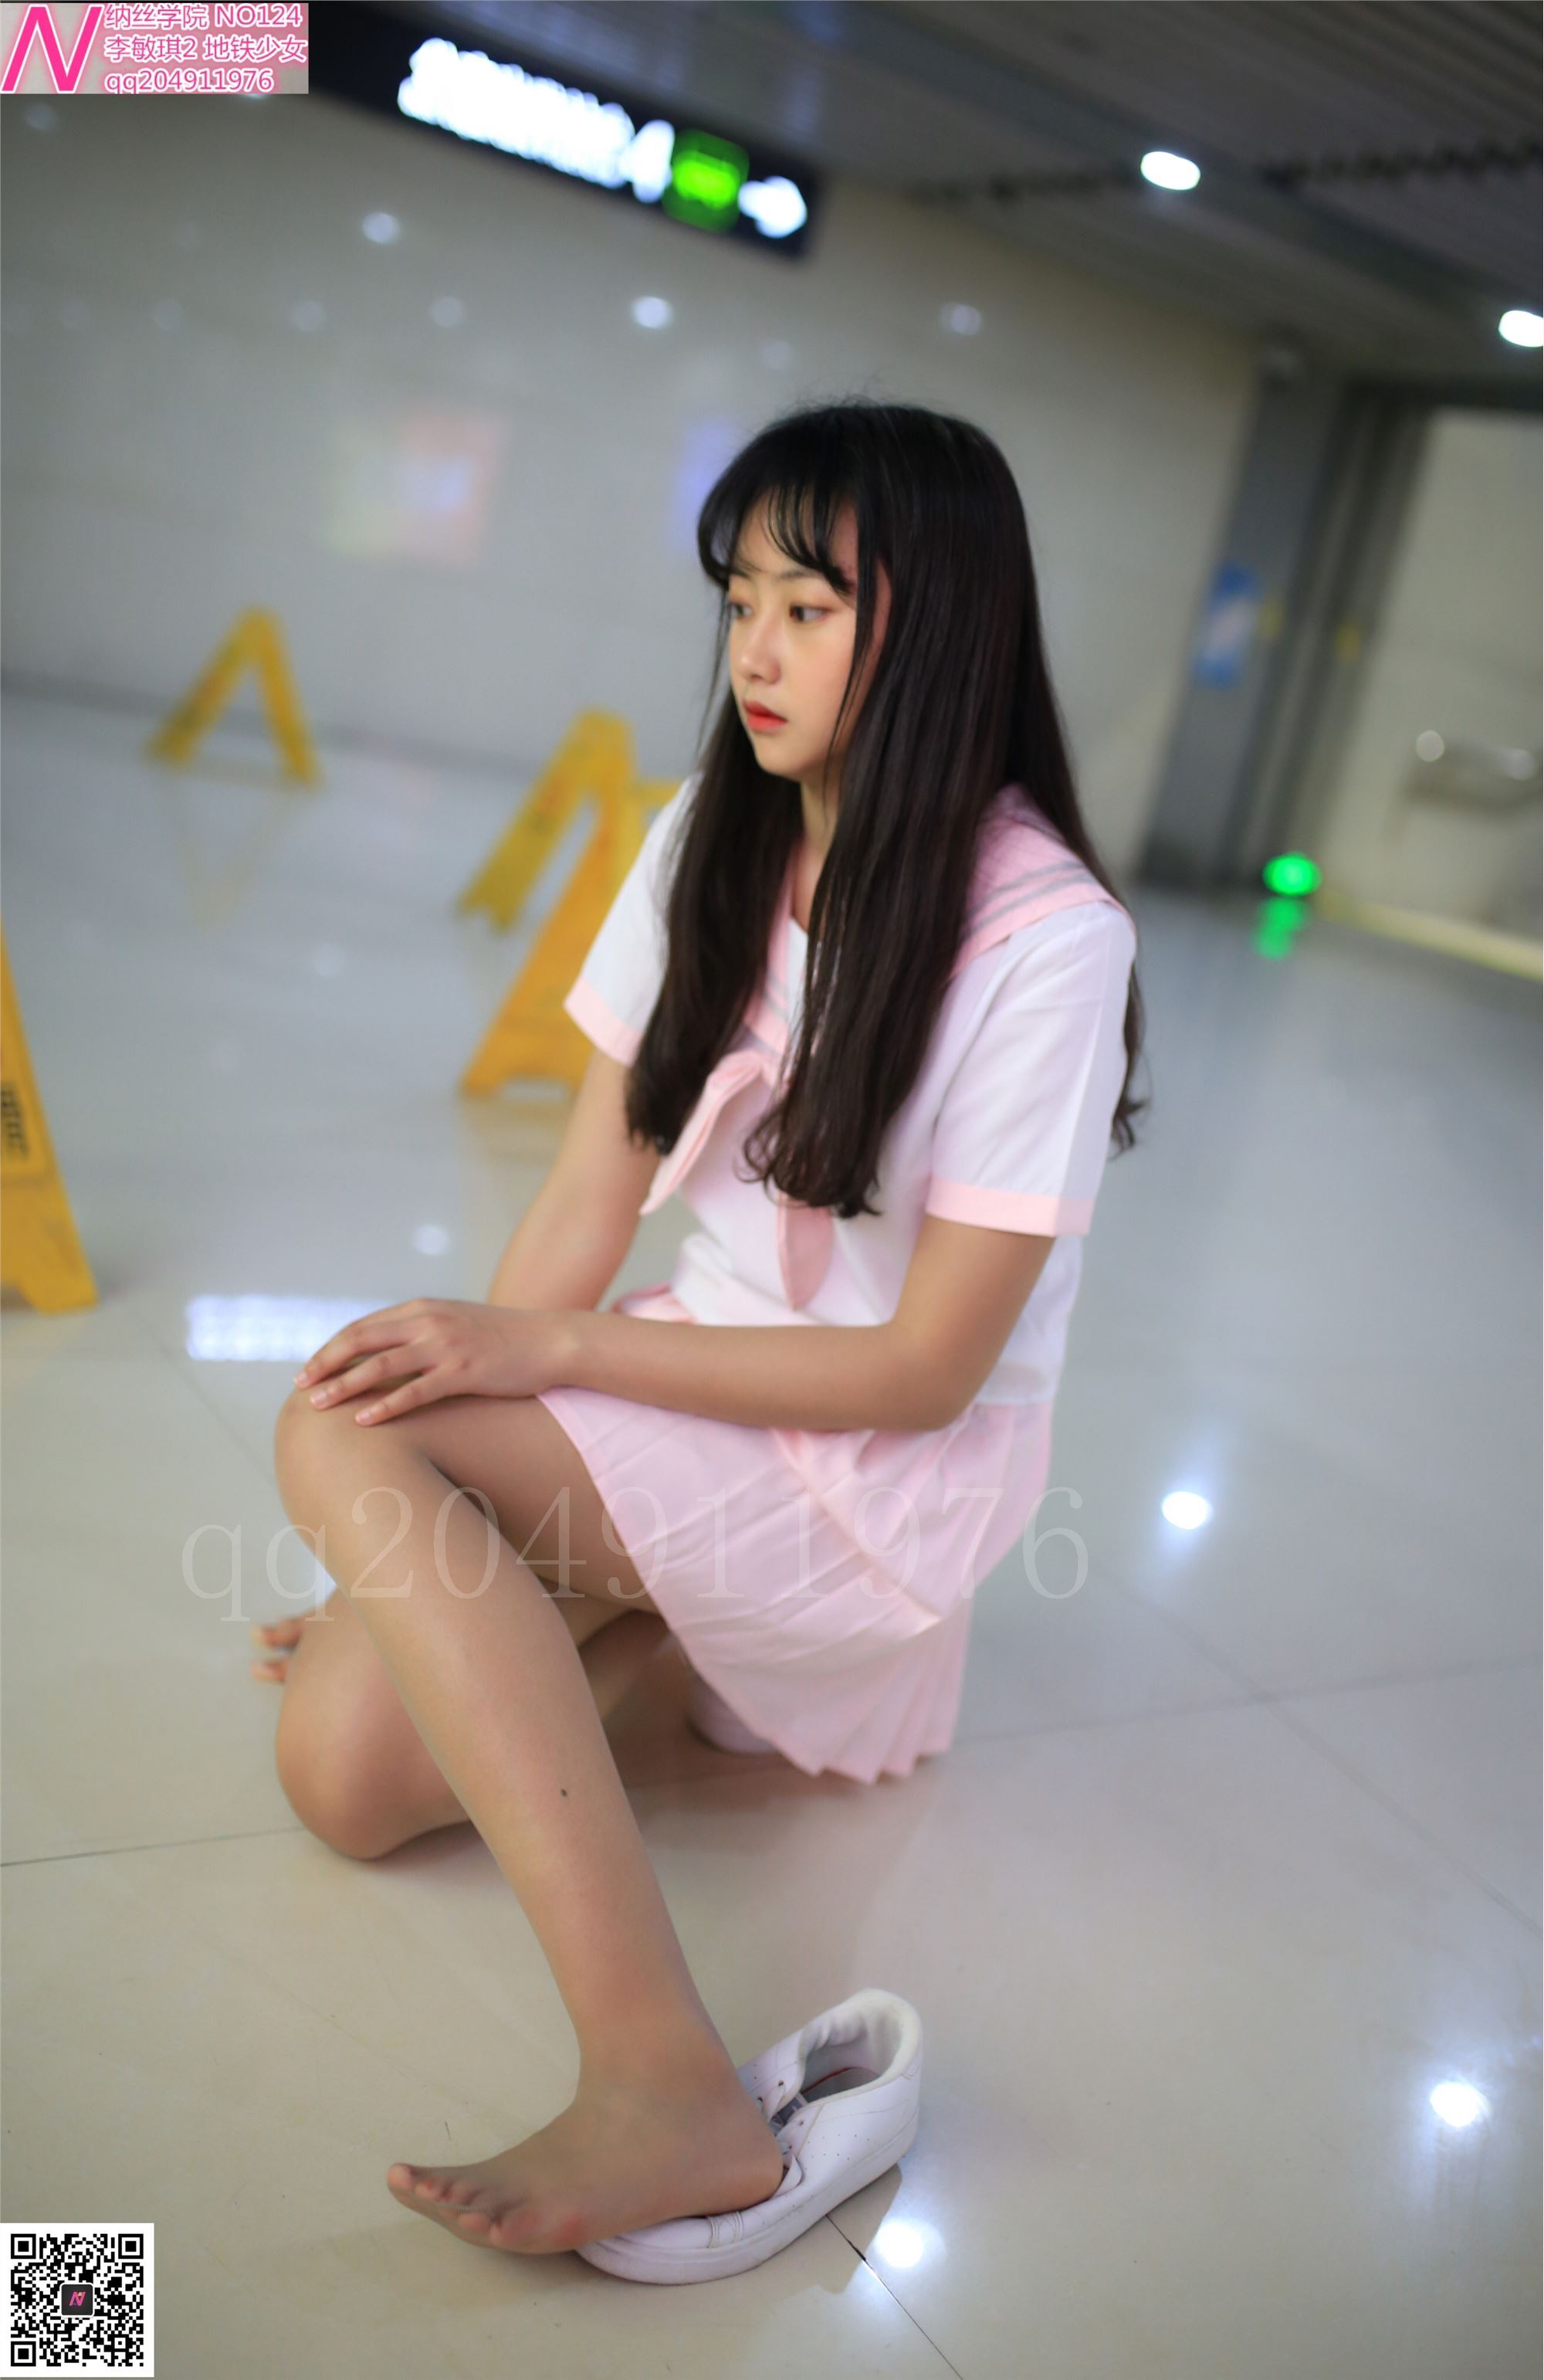 124 photos of Shimin Metro girl 92p Nash